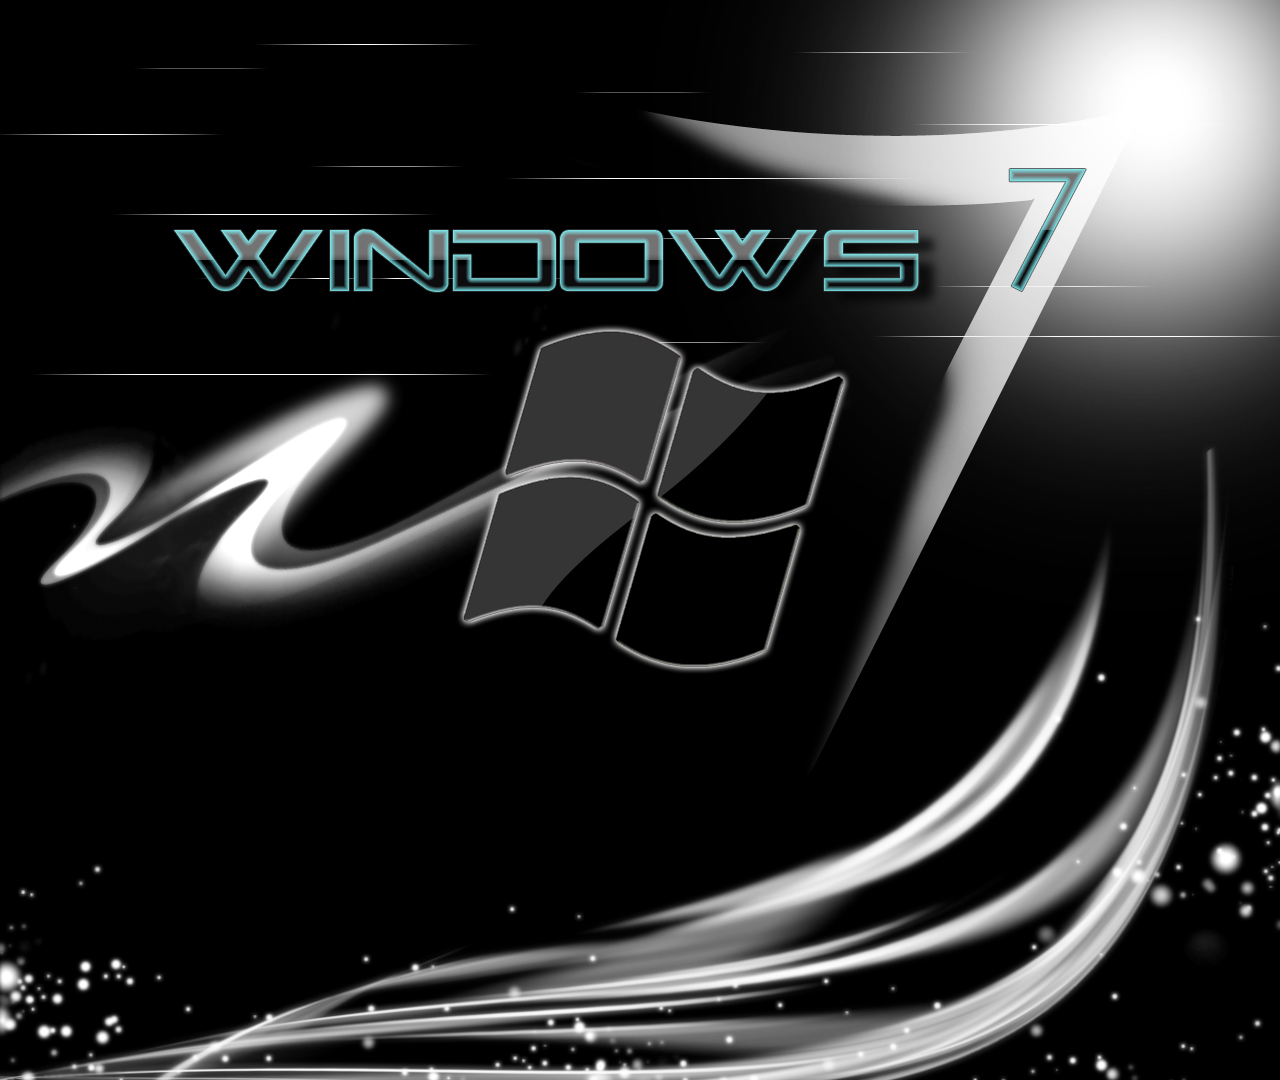 window 7 HD Wallpaper: HD Wallpapers of Windows 7